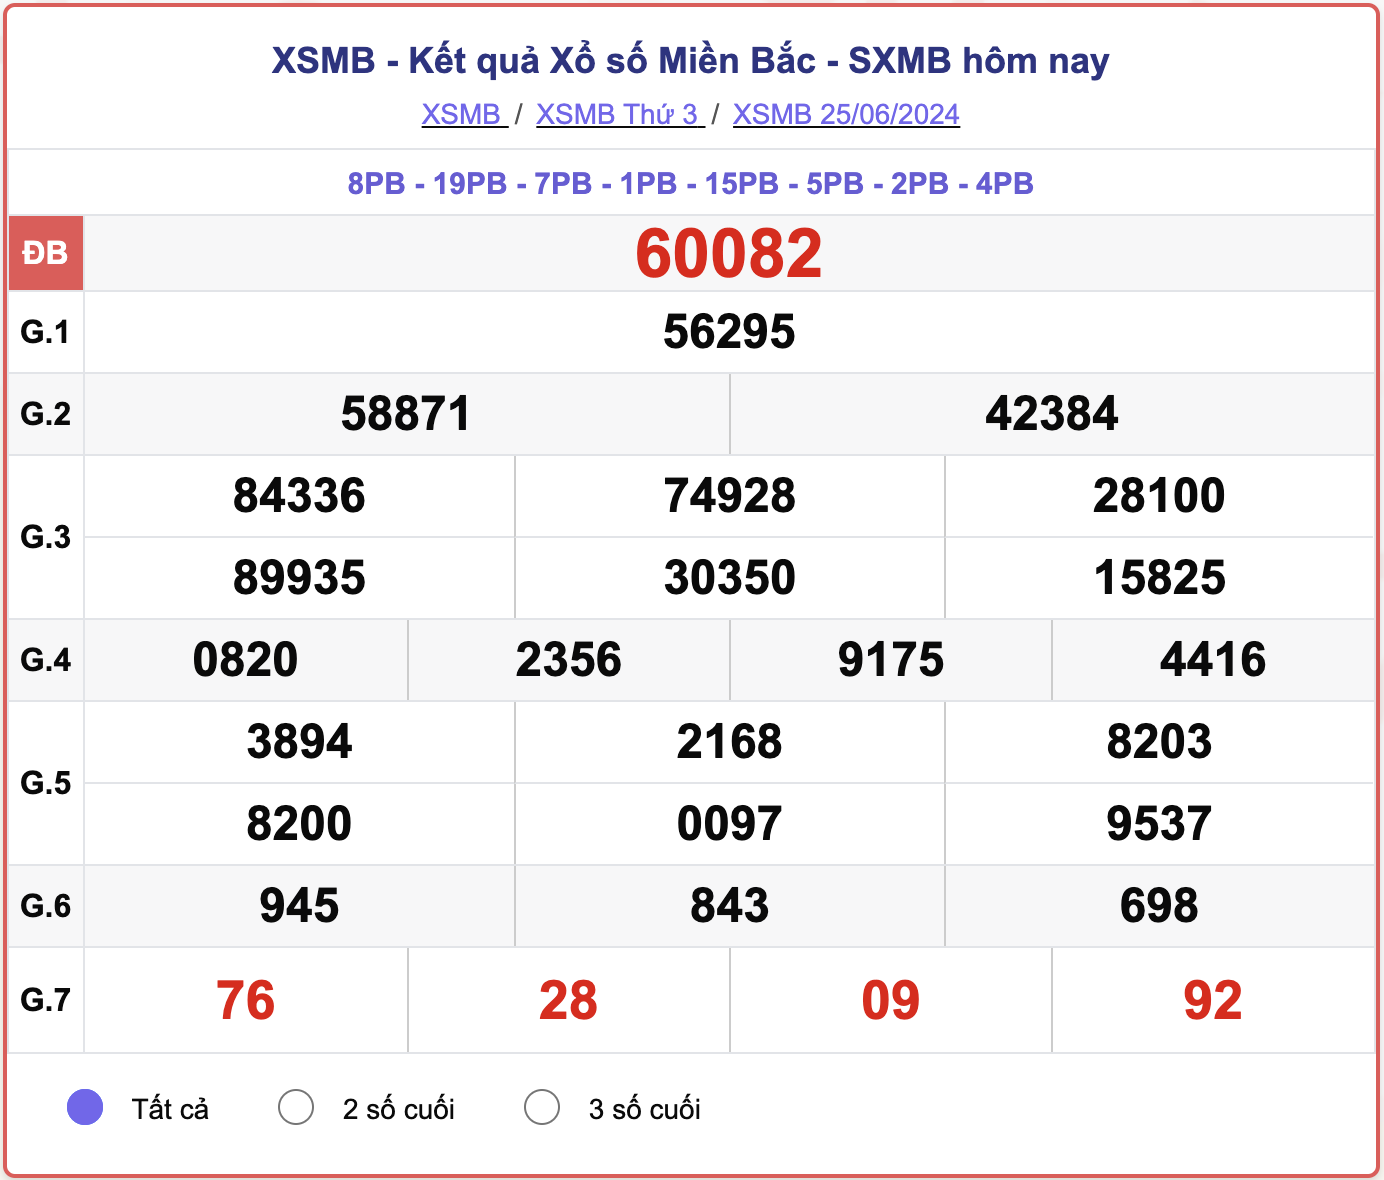 XSMB 25/6, kết quả xổ số miền Bắc hôm nay 25/6/2024.